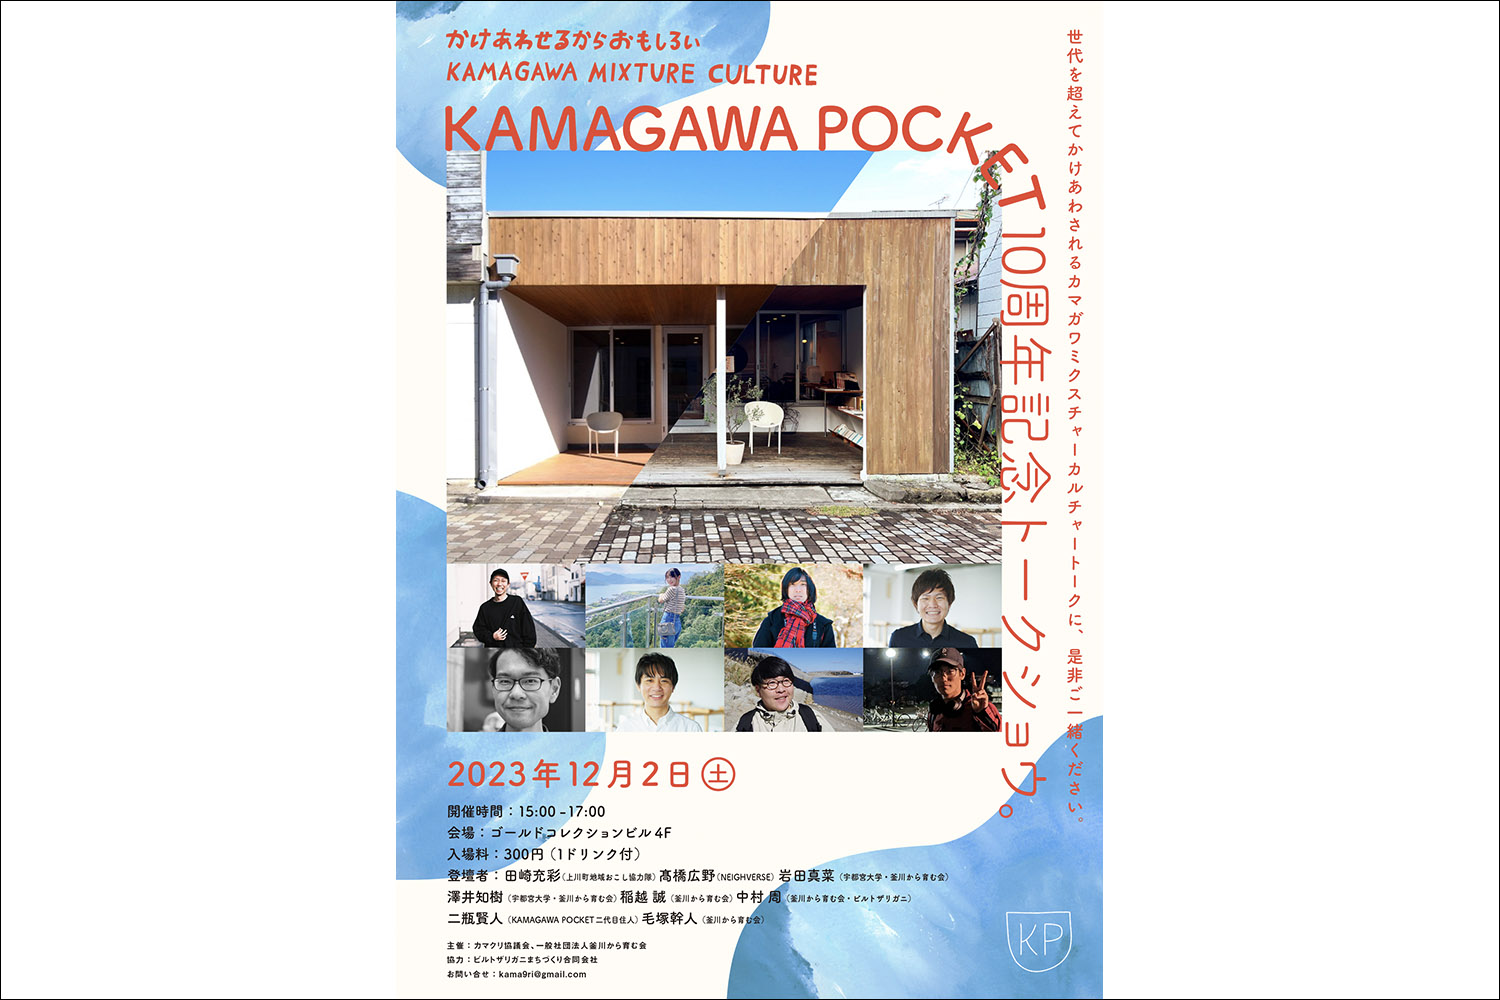 KAMAGAWA POCKET 10周年記念イベントを開催します！